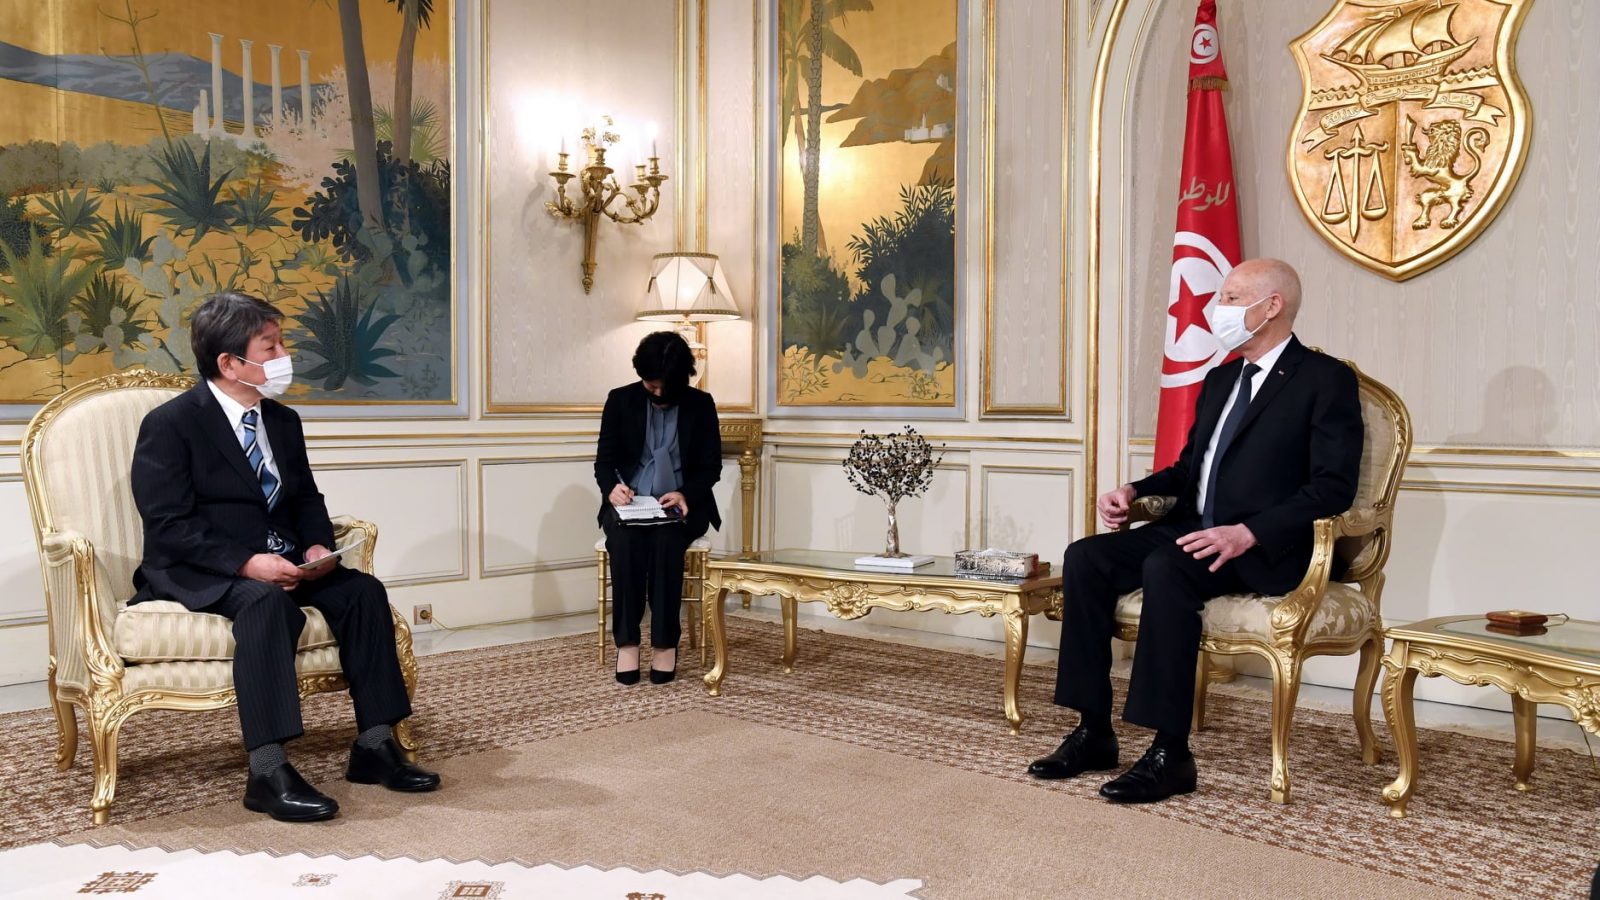 قيس سعيد يعبر عن شكره لليابان لما قدمته من دعم لتونس في مجابهة كورونا(فيديو)